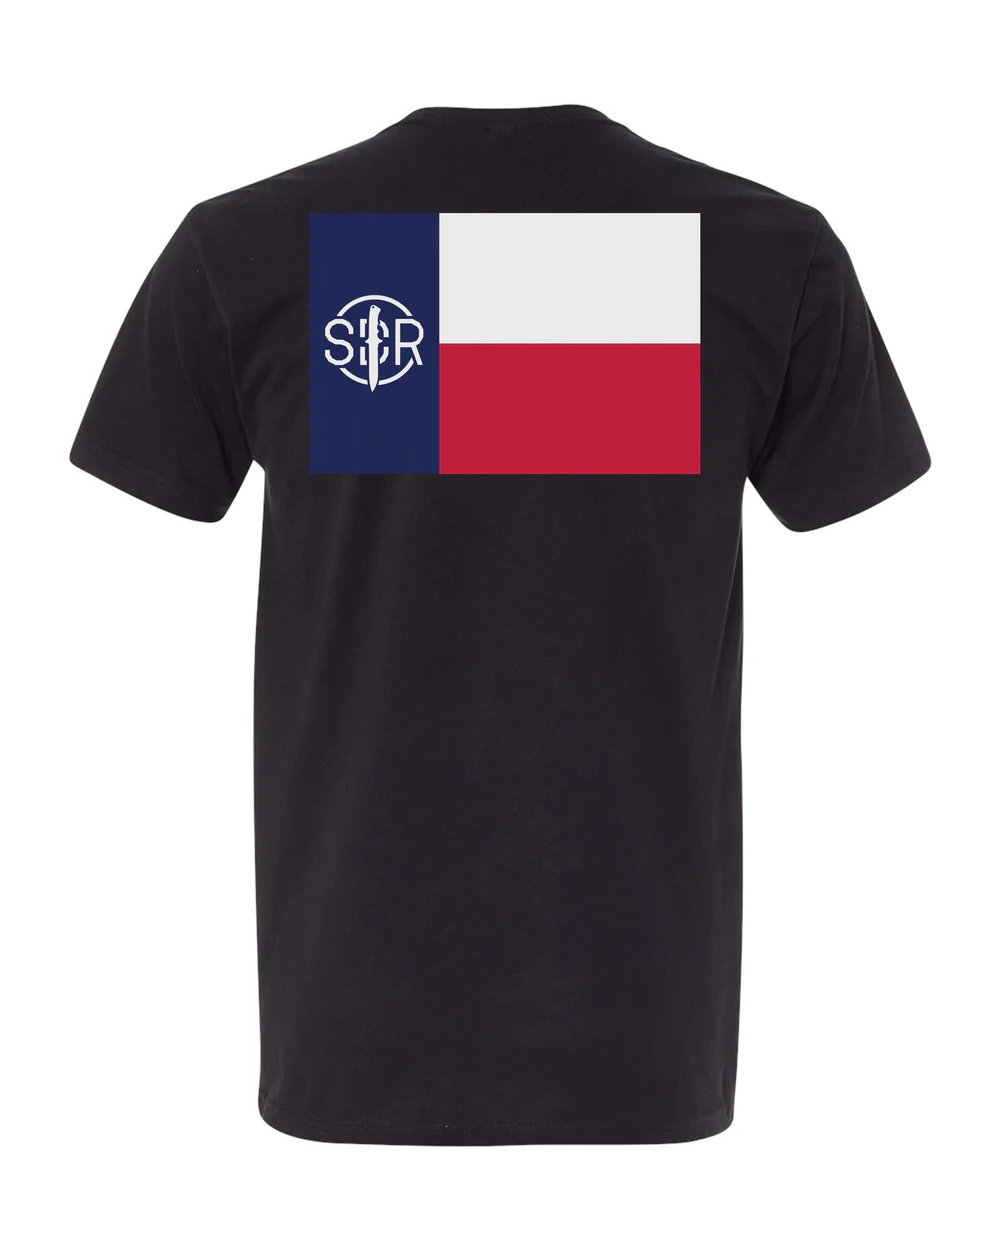 SDR Texas Flag Tee